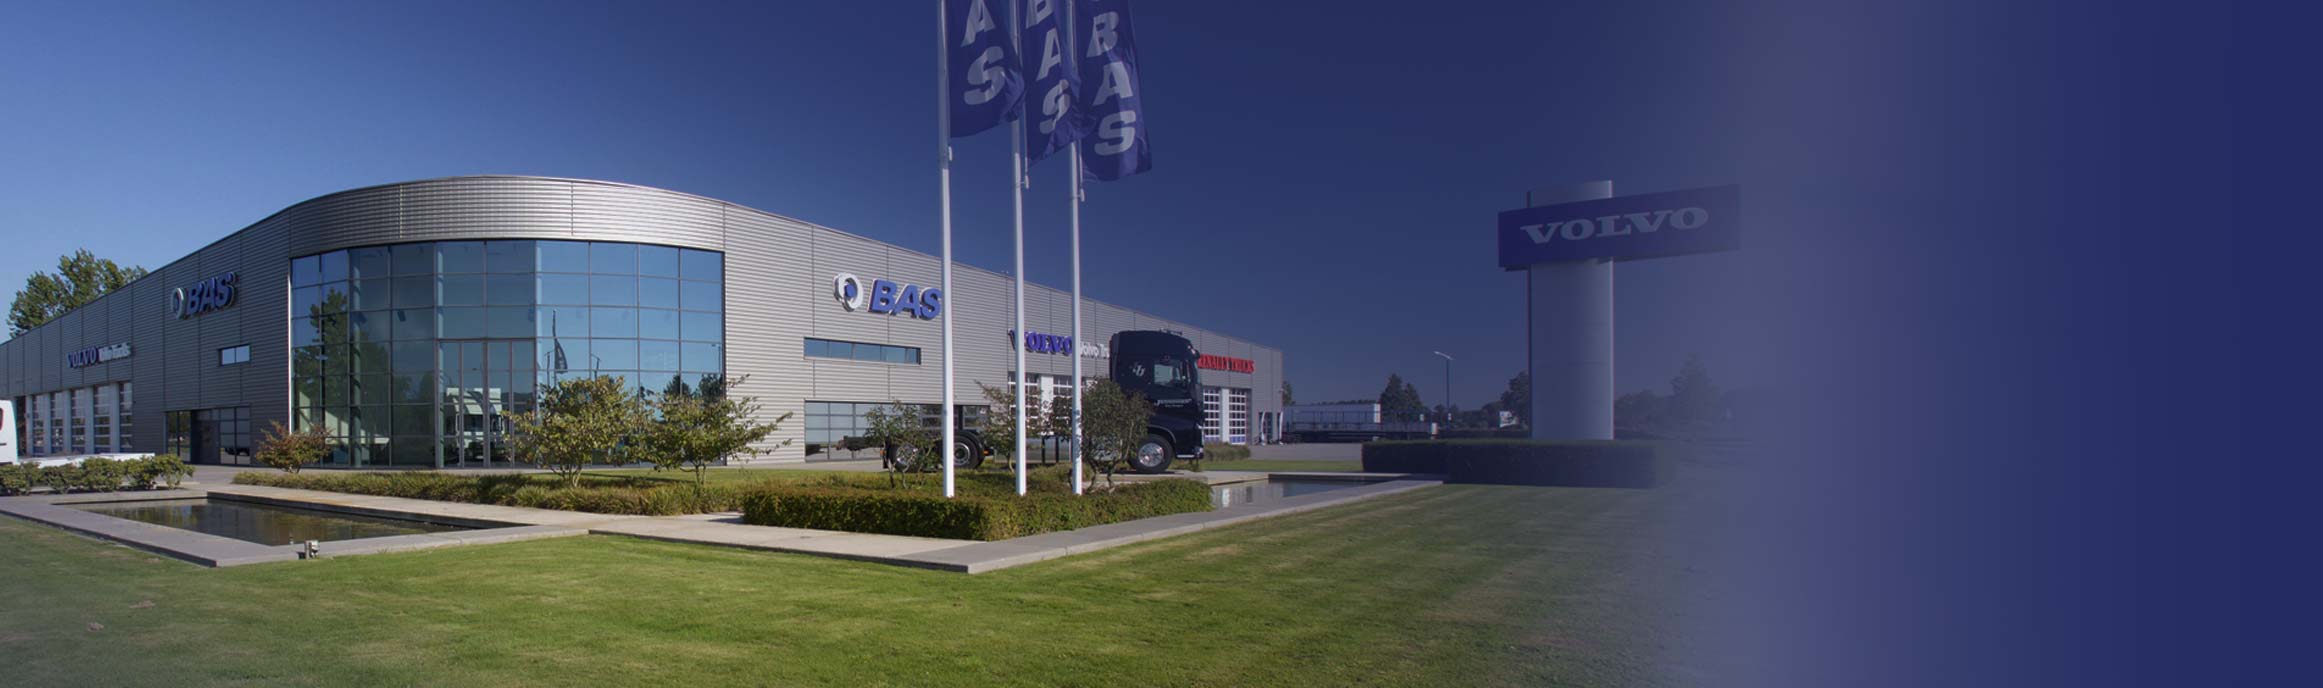 BAS Truck Center vestiging Veghel